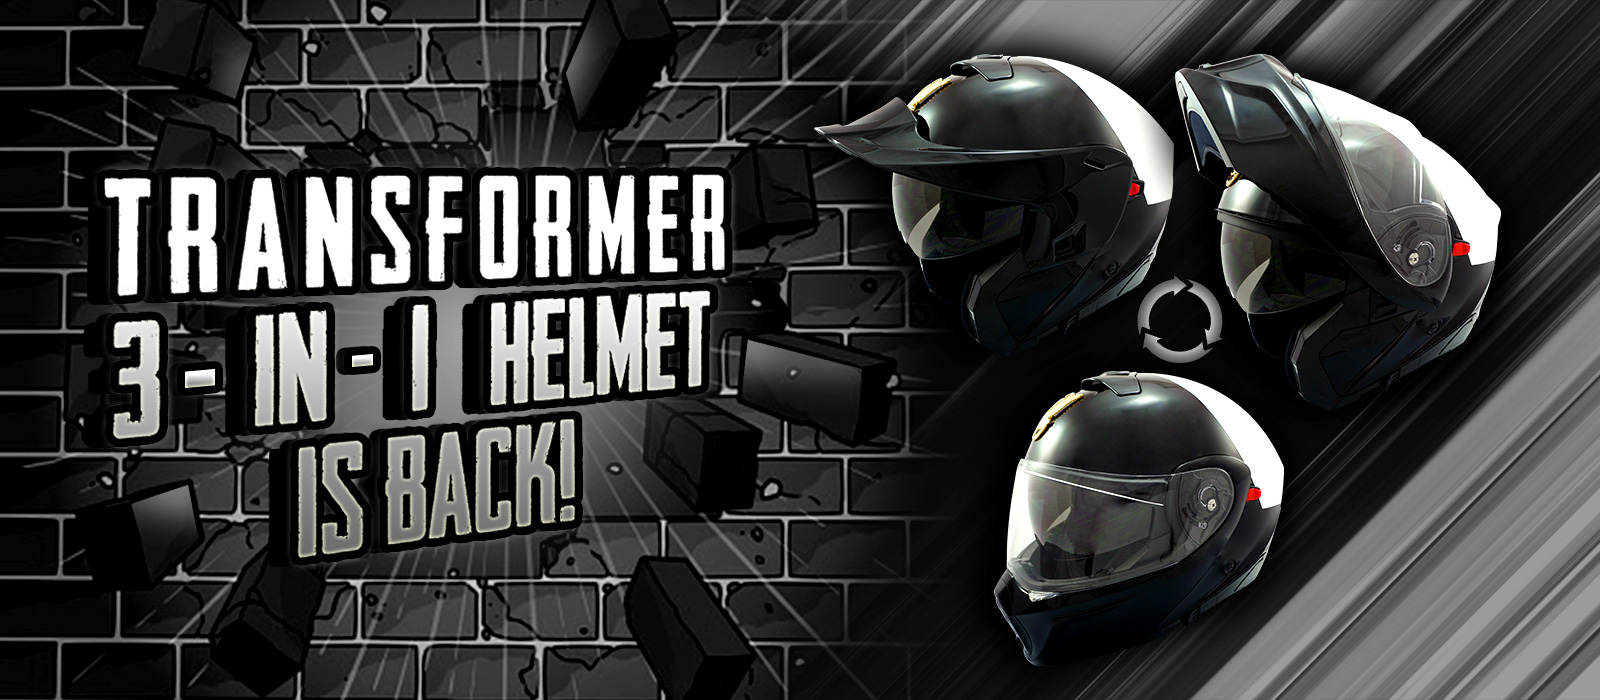 Seer Police Motorcycle Transformer Helmet